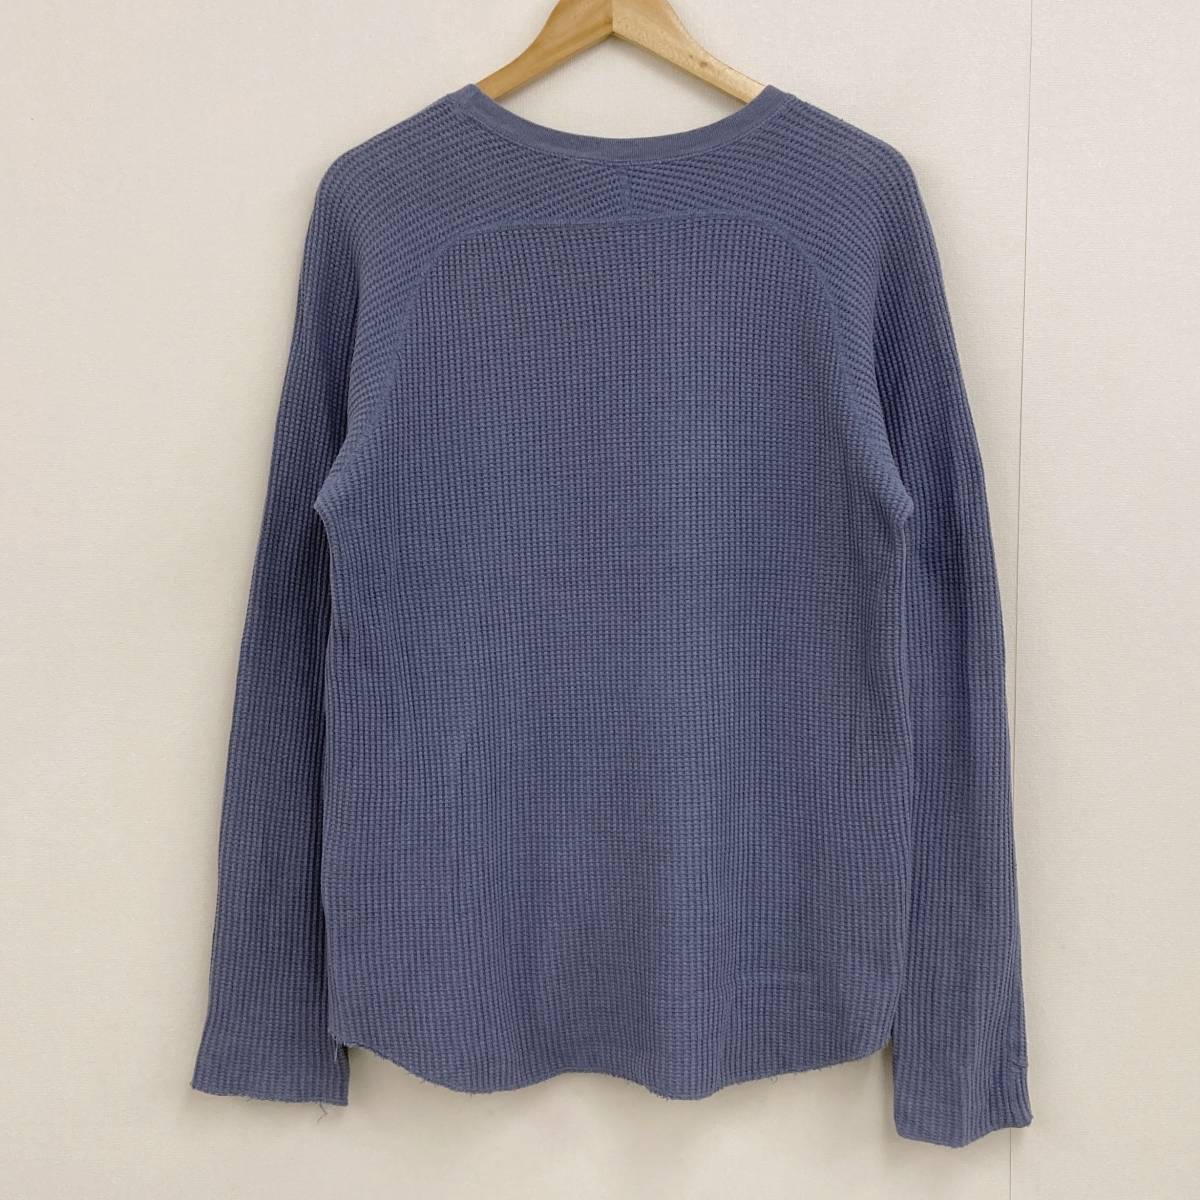 UNUSED サーマル ロングスリーブ カットソー ブルー 青 2サイズ 日本製 アンユーズド 長袖 Tシャツ ワッフル 3090342_画像2